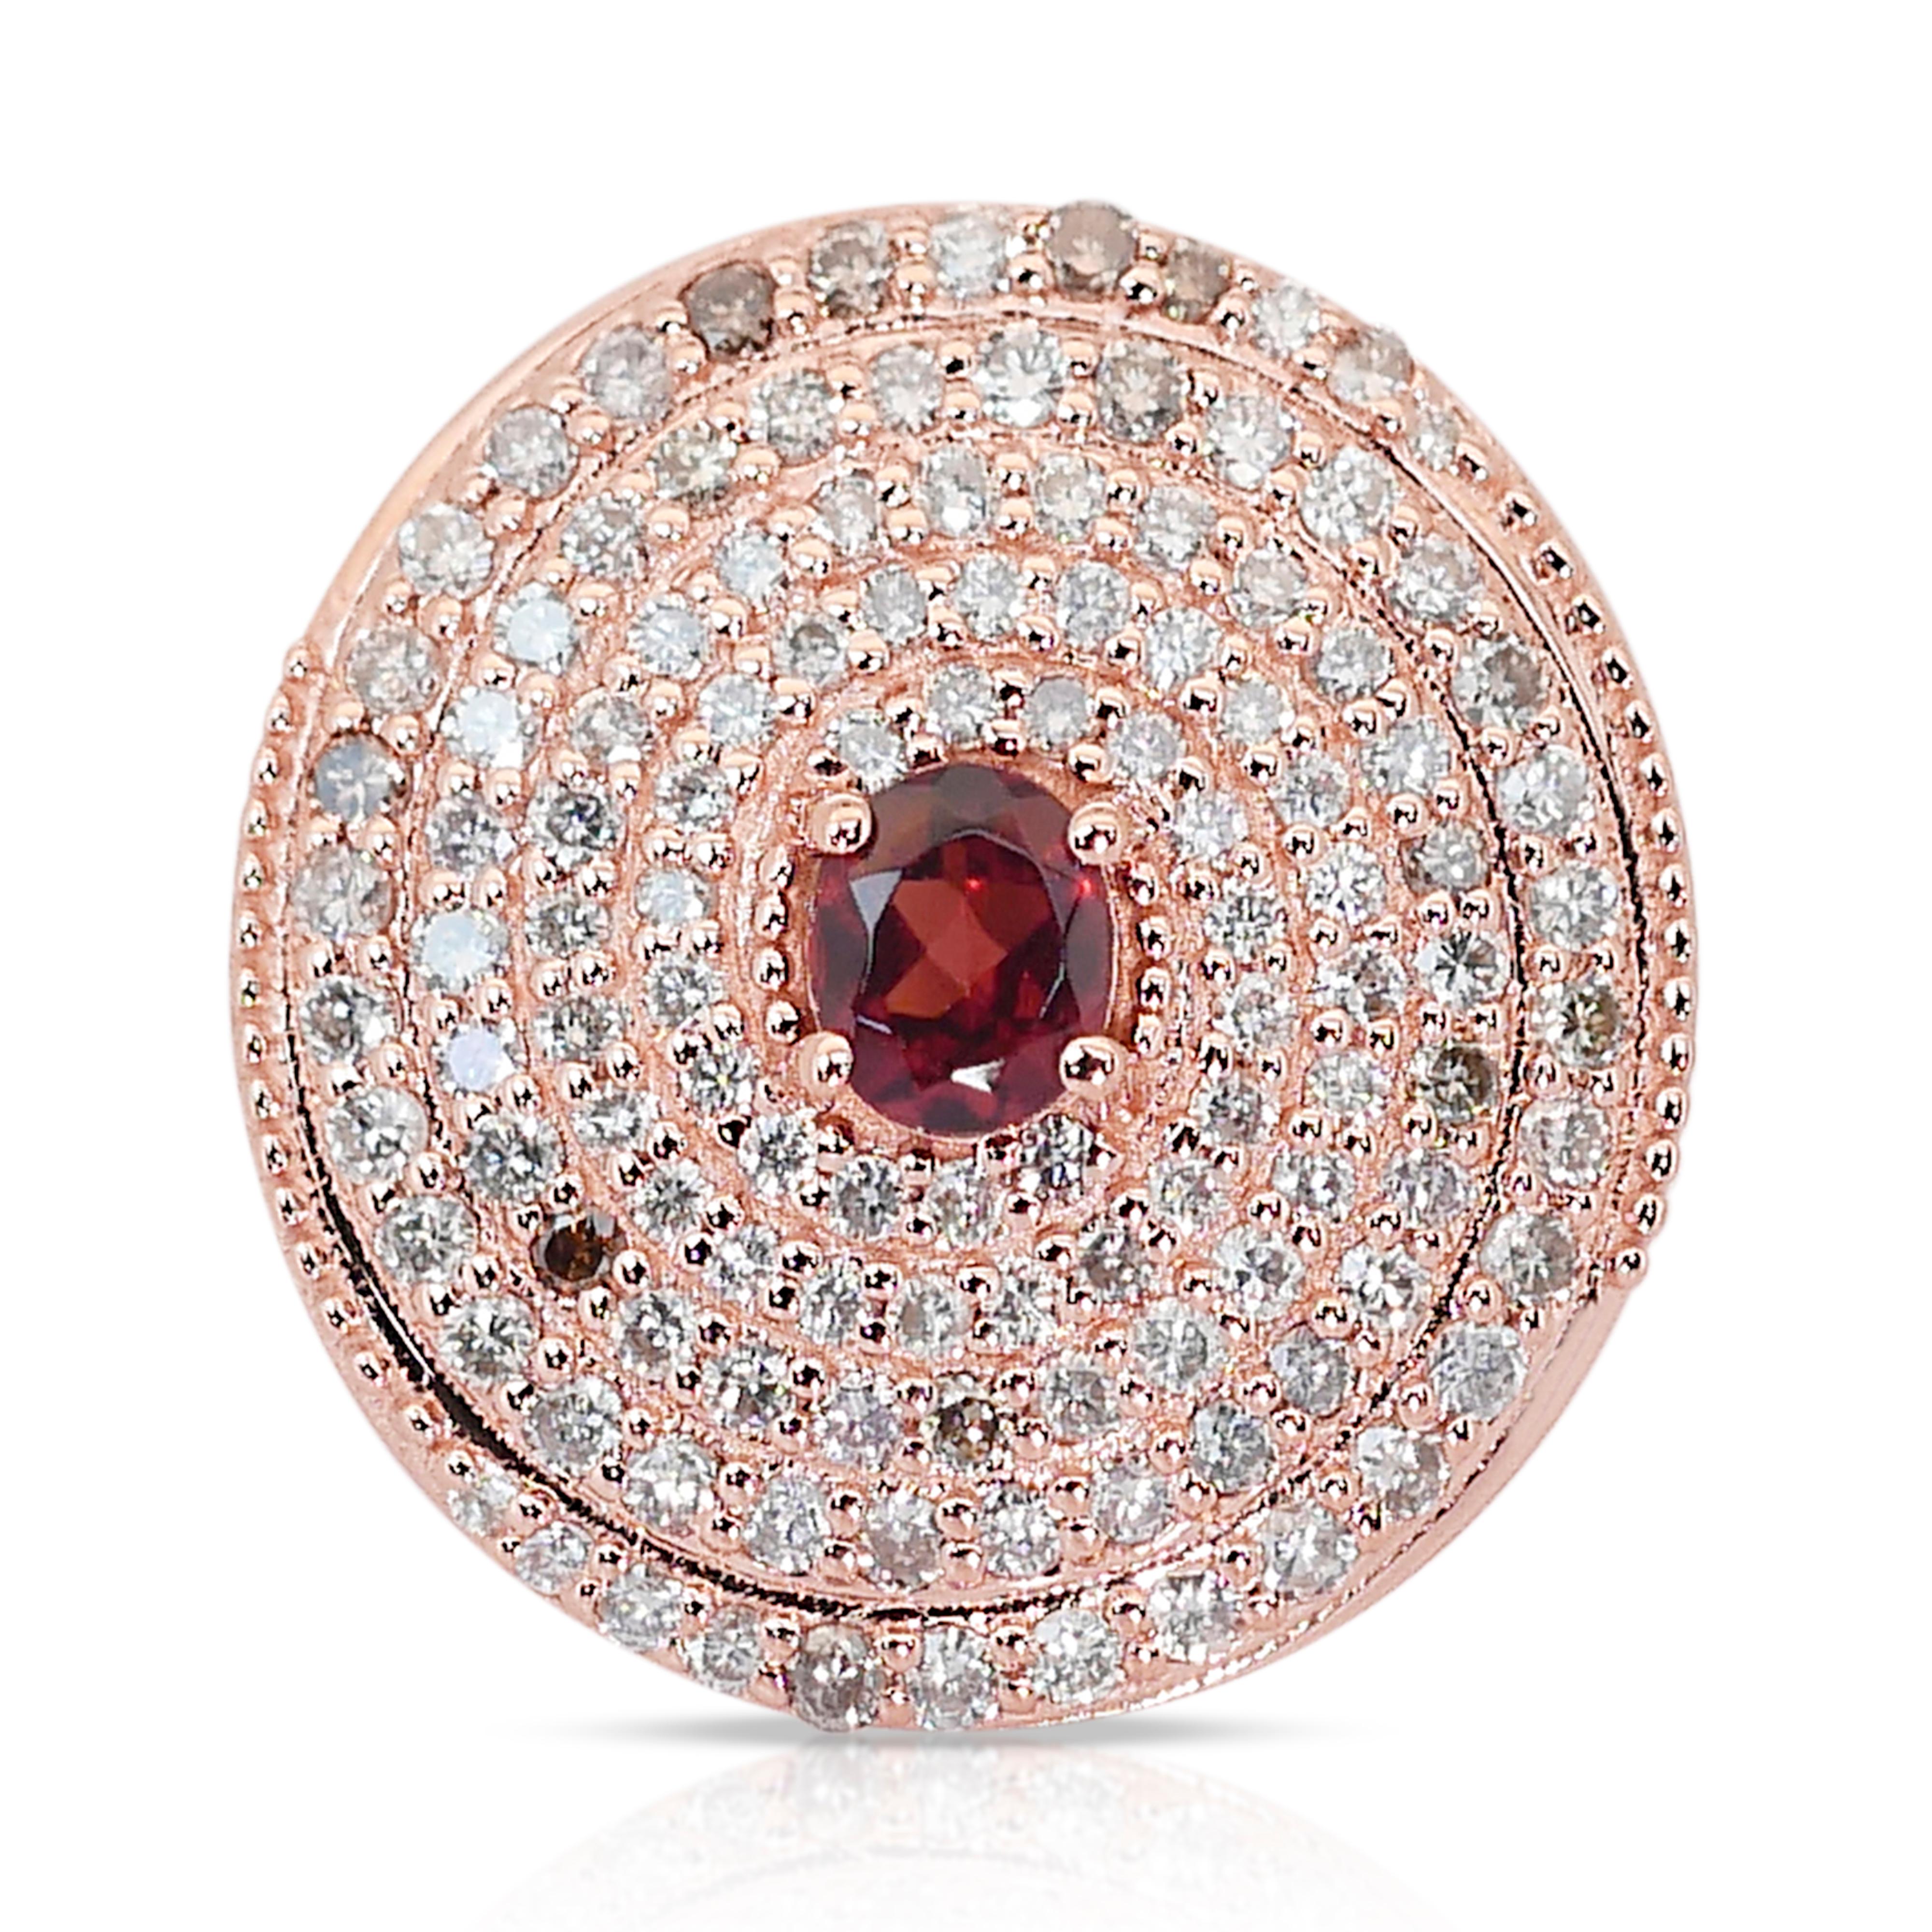 Schillernder Halo-Ring aus 14 Karat Roségold mit Granat und Diamanten mit 2,11 Karat - IGI-zertifiziert

Im Mittelpunkt dieses faszinierenden Rings steht ein ovaler, braunroter Granat von 0,51 Karat. Der reiche Edelstein wird durch einen Kranz von